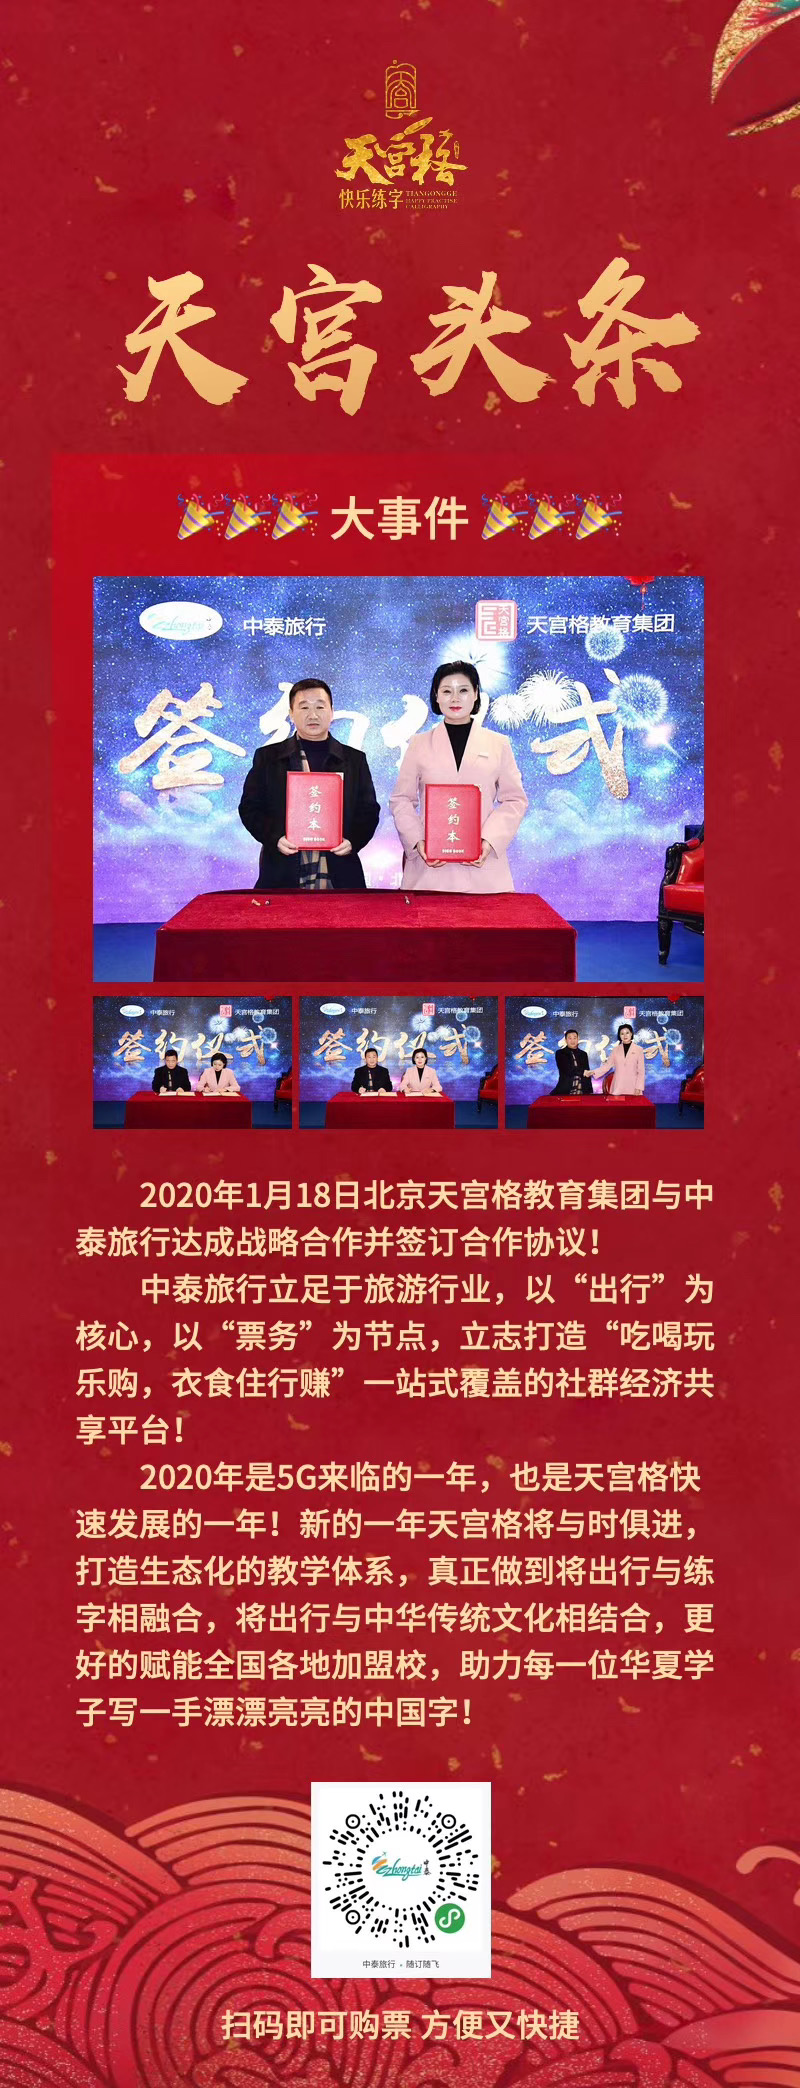 2020年1月18日北京天宫格教育集团与中泰旅行达成战略合作并签订合作协议！